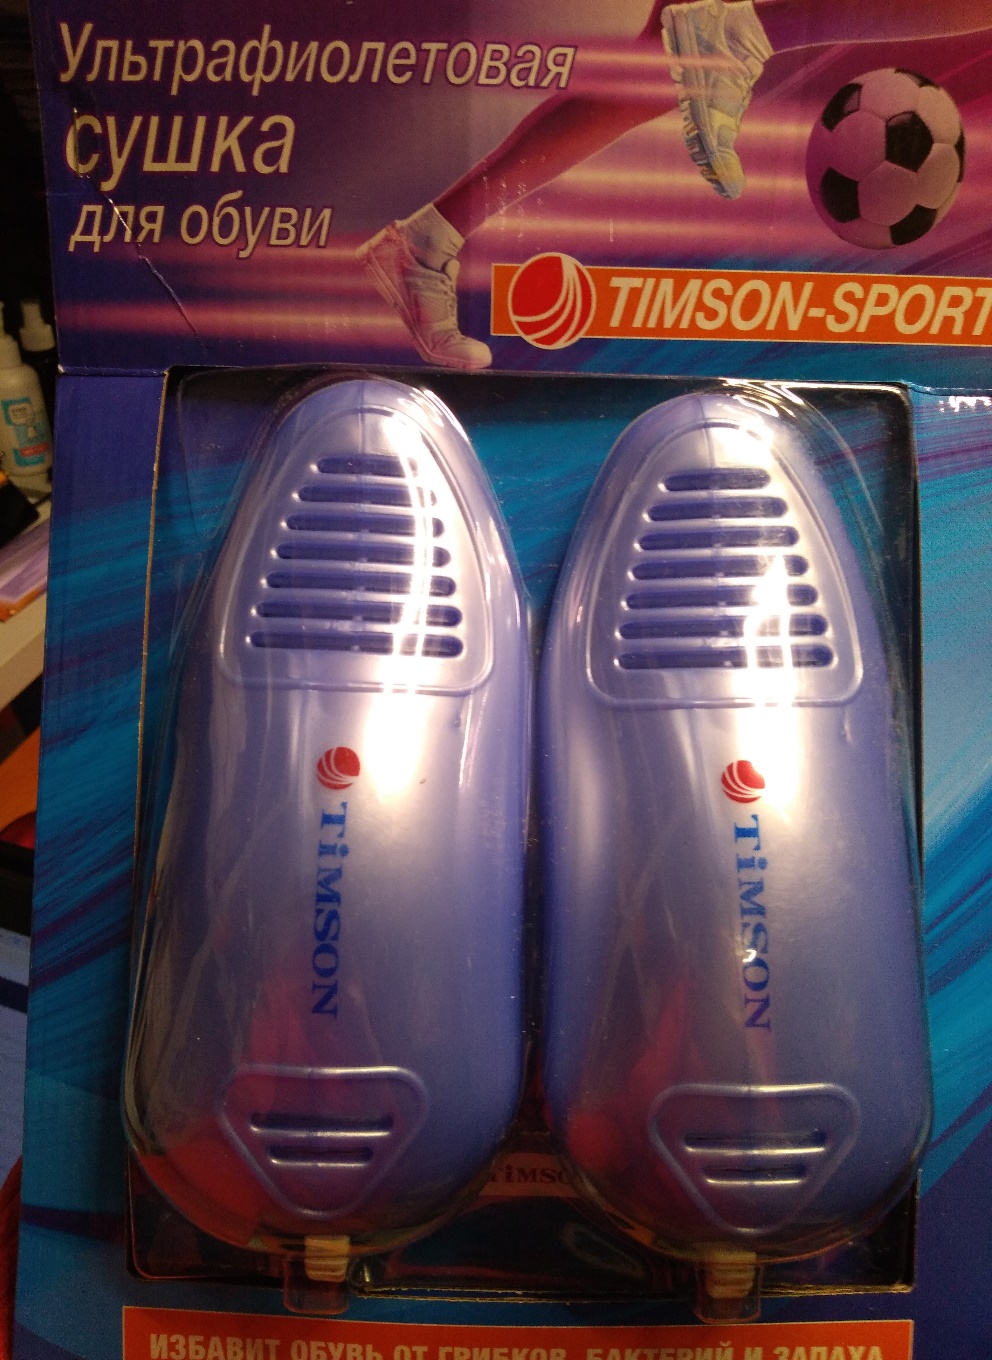 Ультрафиолетовая сушилка для обуви «Тимсон» Sport 2424